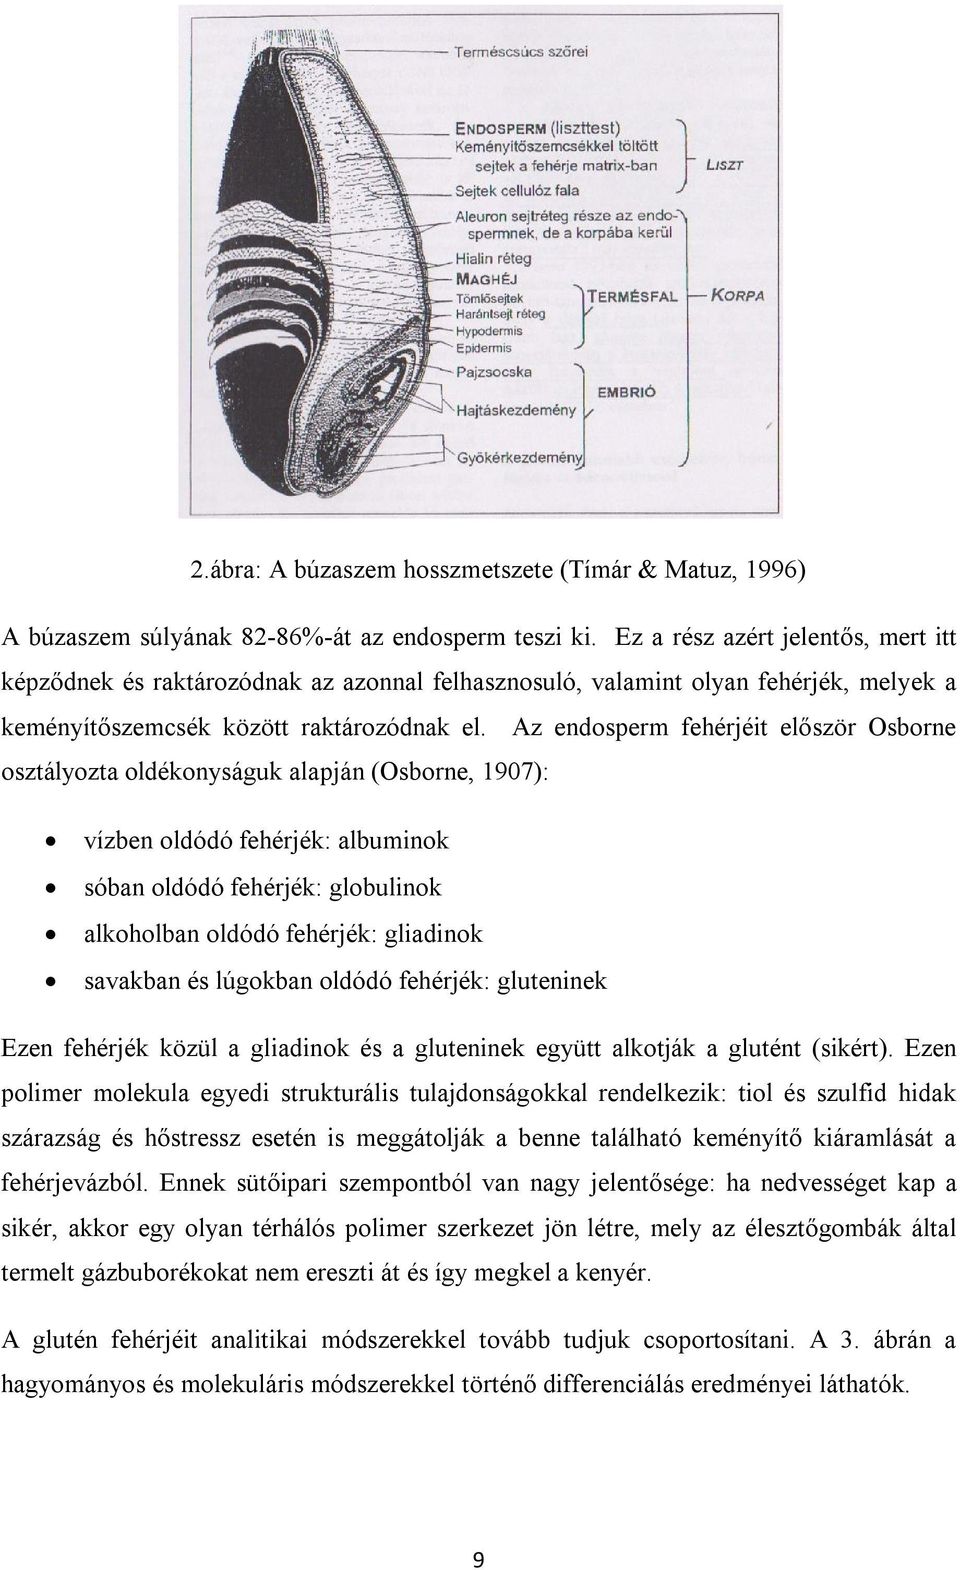 Az endosperm fehérjéit először Osborne osztályozta oldékonyságuk alapján (Osborne, 1907): vízben oldódó fehérjék: albuminok sóban oldódó fehérjék: globulinok alkoholban oldódó fehérjék: gliadinok